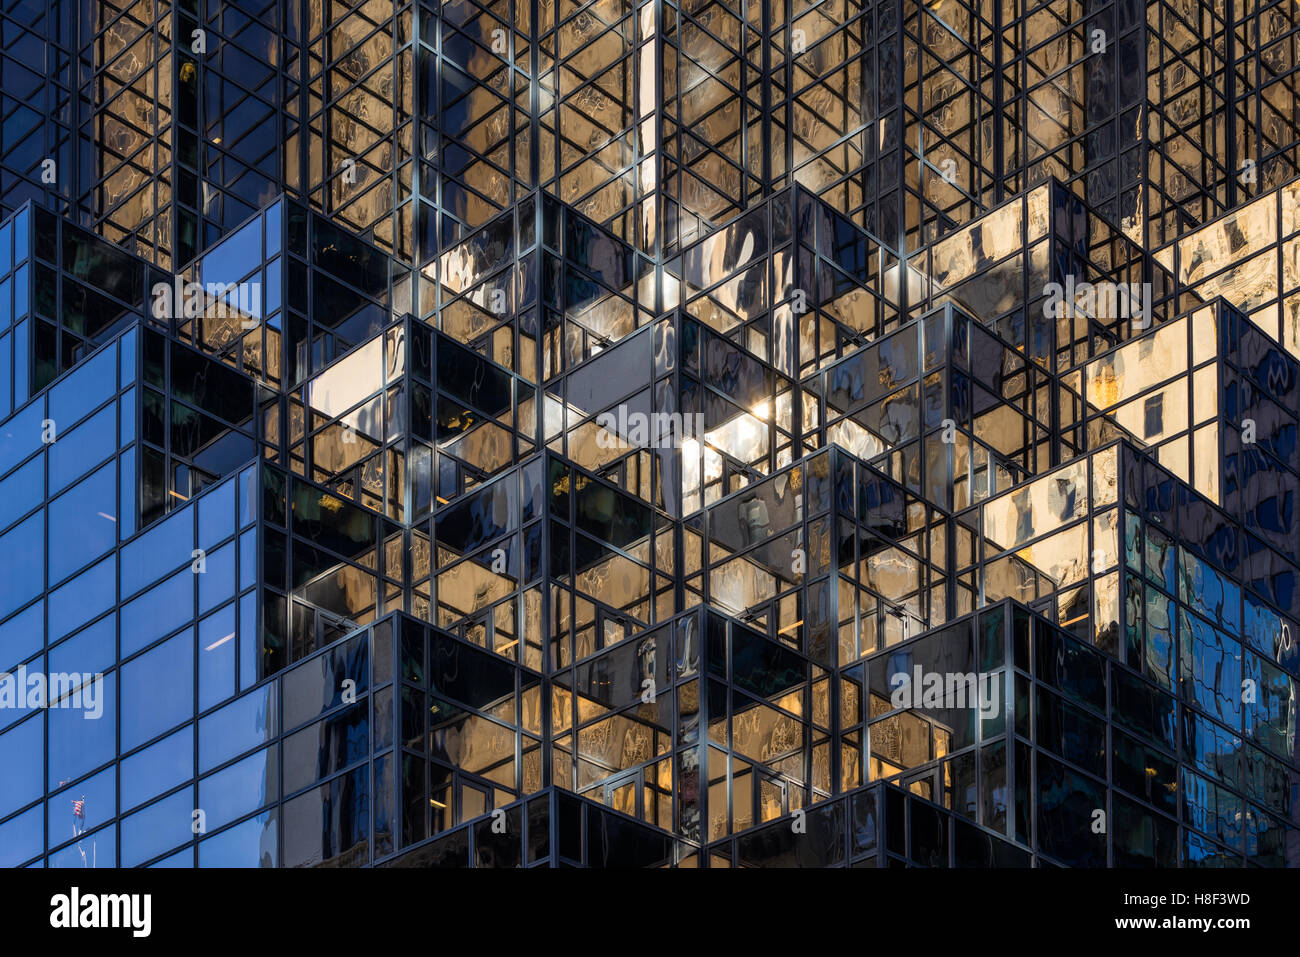 Dettagli architettonici della facciata di Trump Tower con finestre di vetro e terrazze. Midtown Manhattan, a New York City Foto Stock